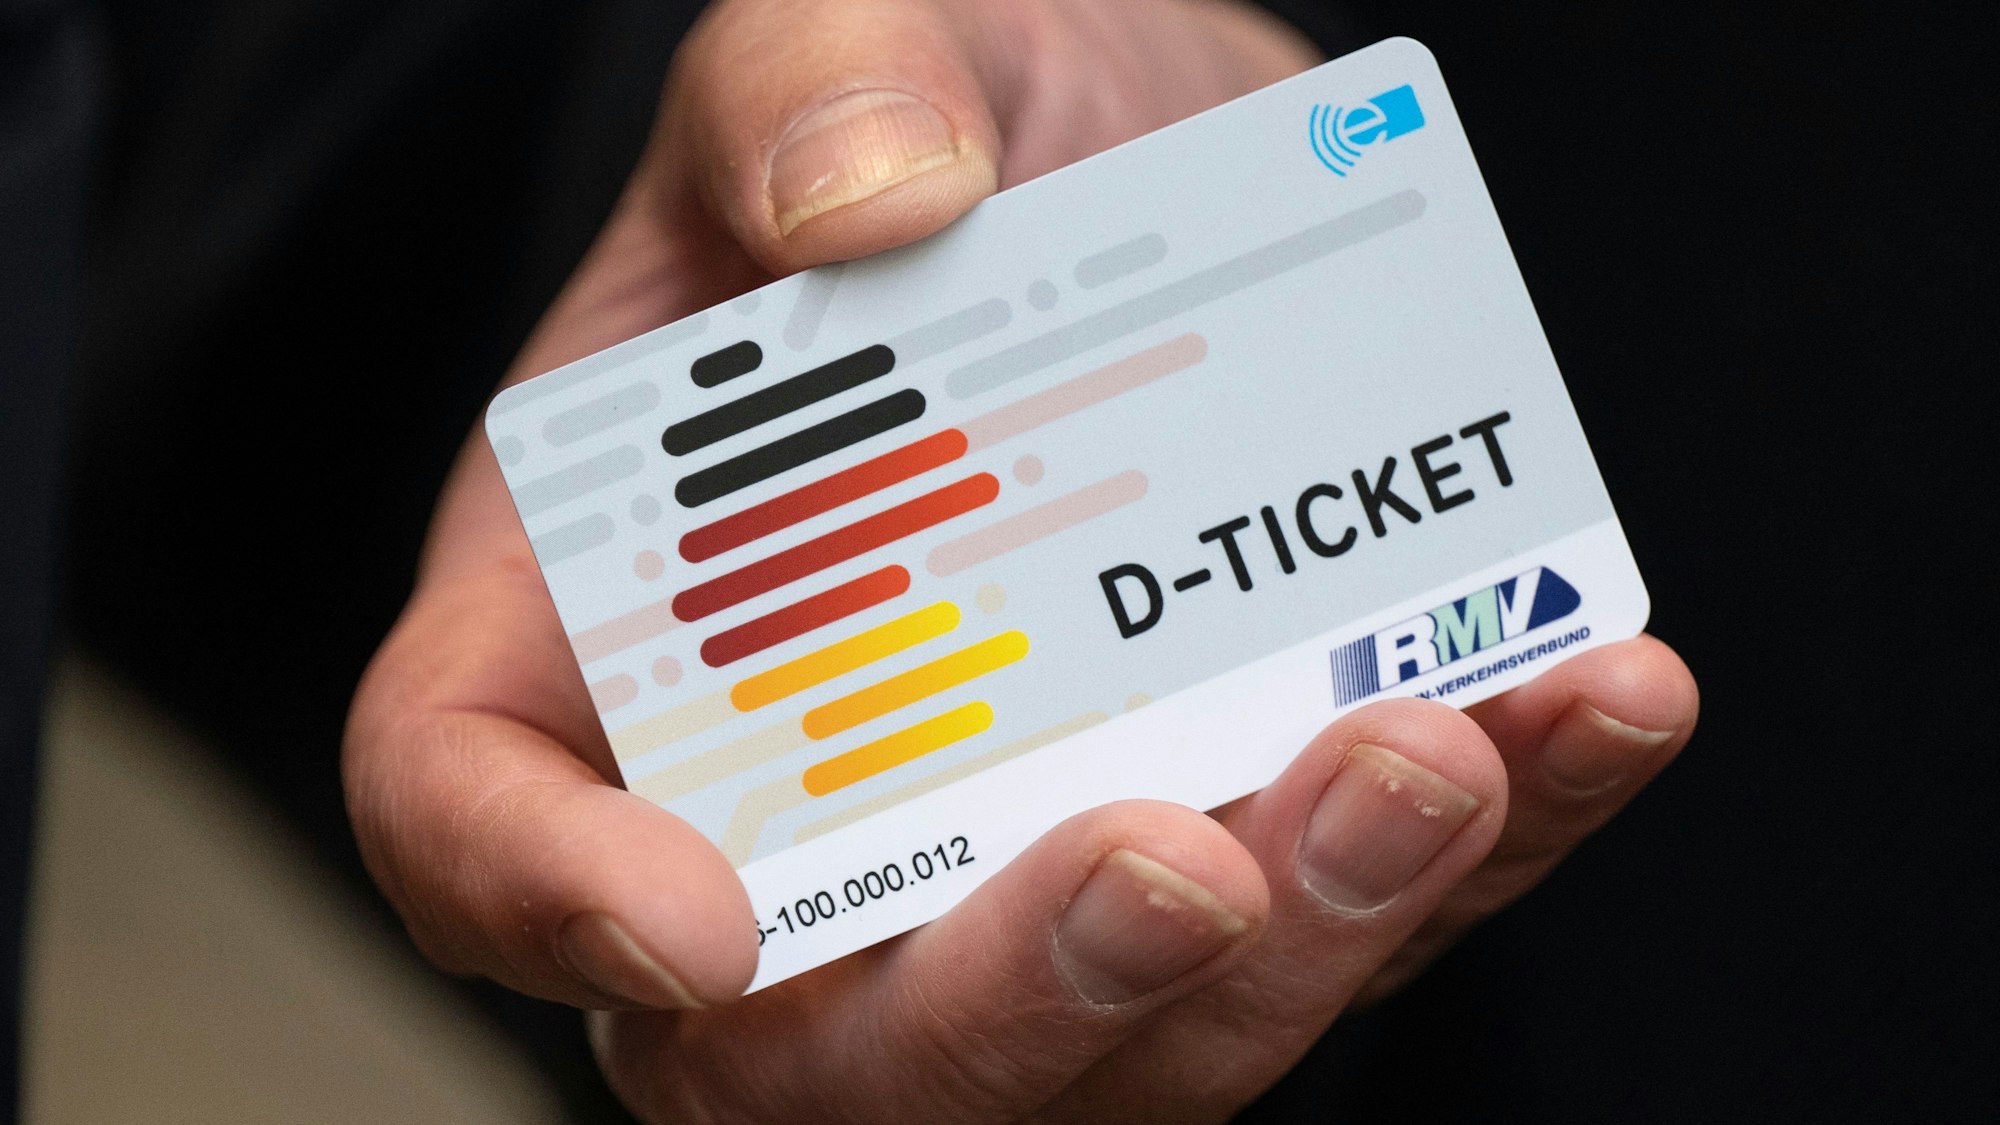 Ein „D-Ticket“ im Chipkartenformat wird auf einem Pressetermin gezeigt.